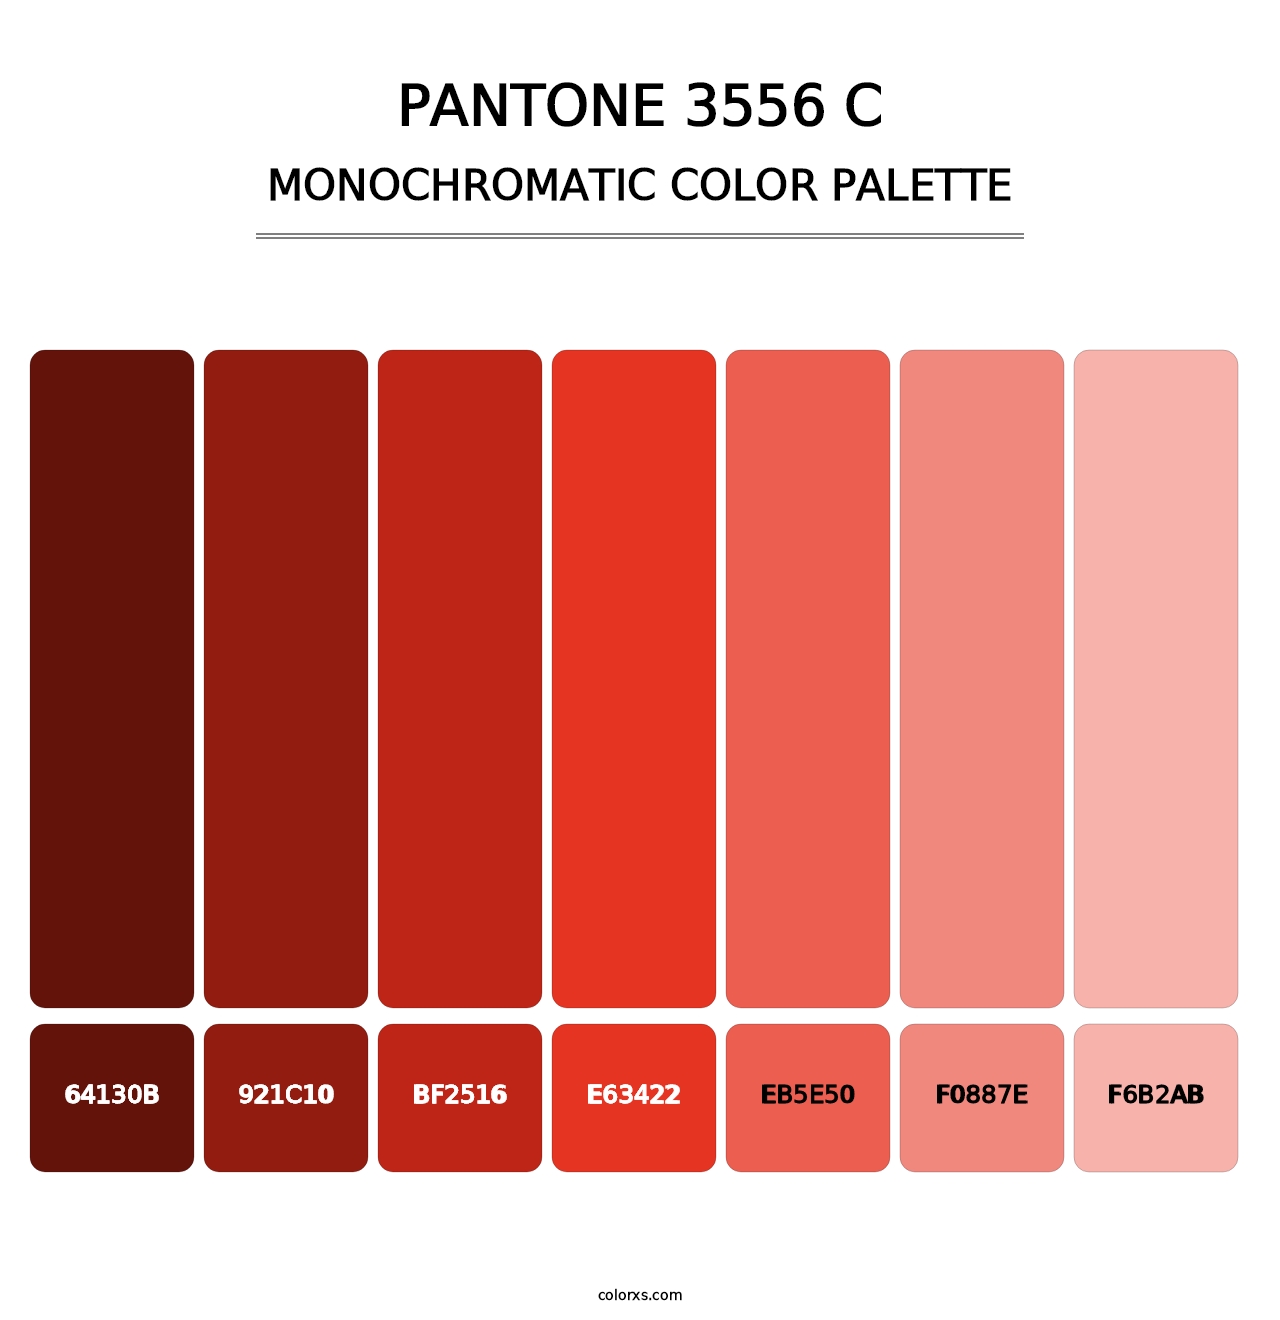 PANTONE 3556 C - Monochromatic Color Palette